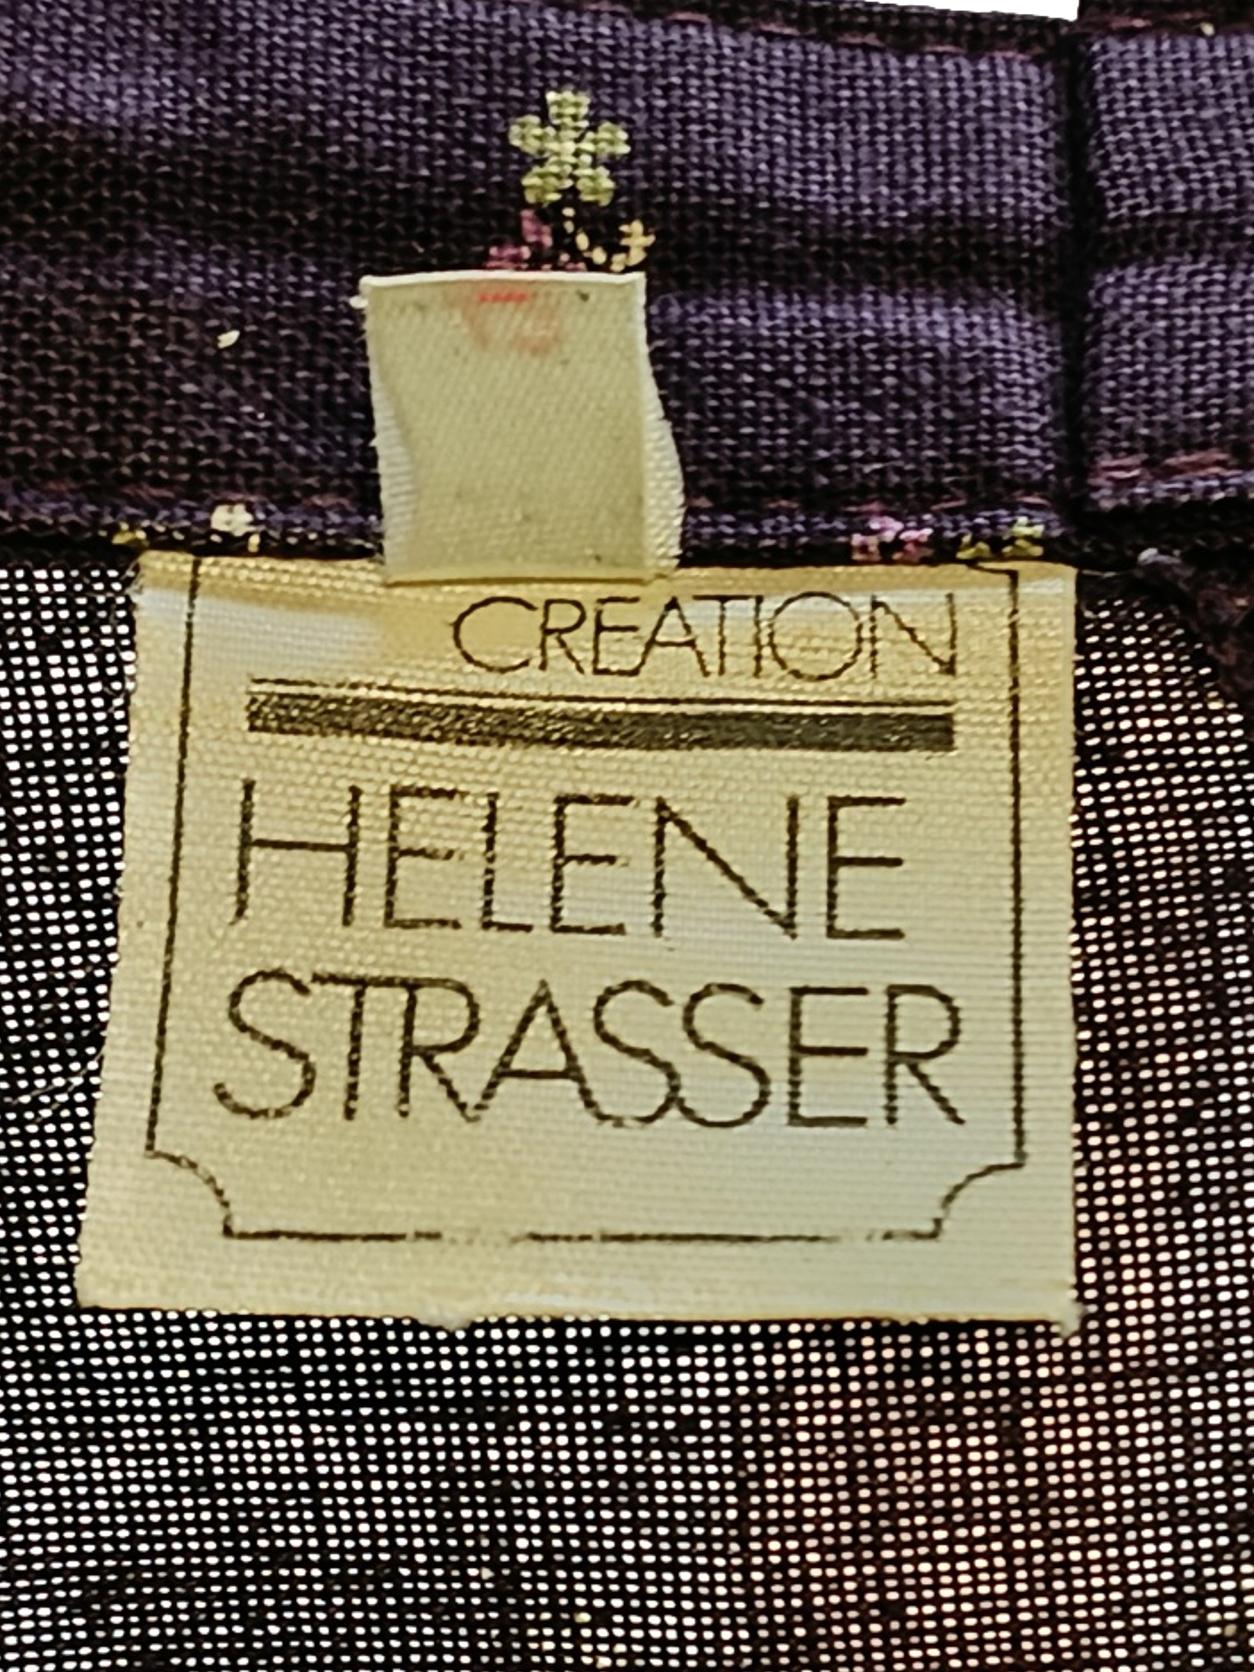 Jupe Helene Strasser - Taille 42